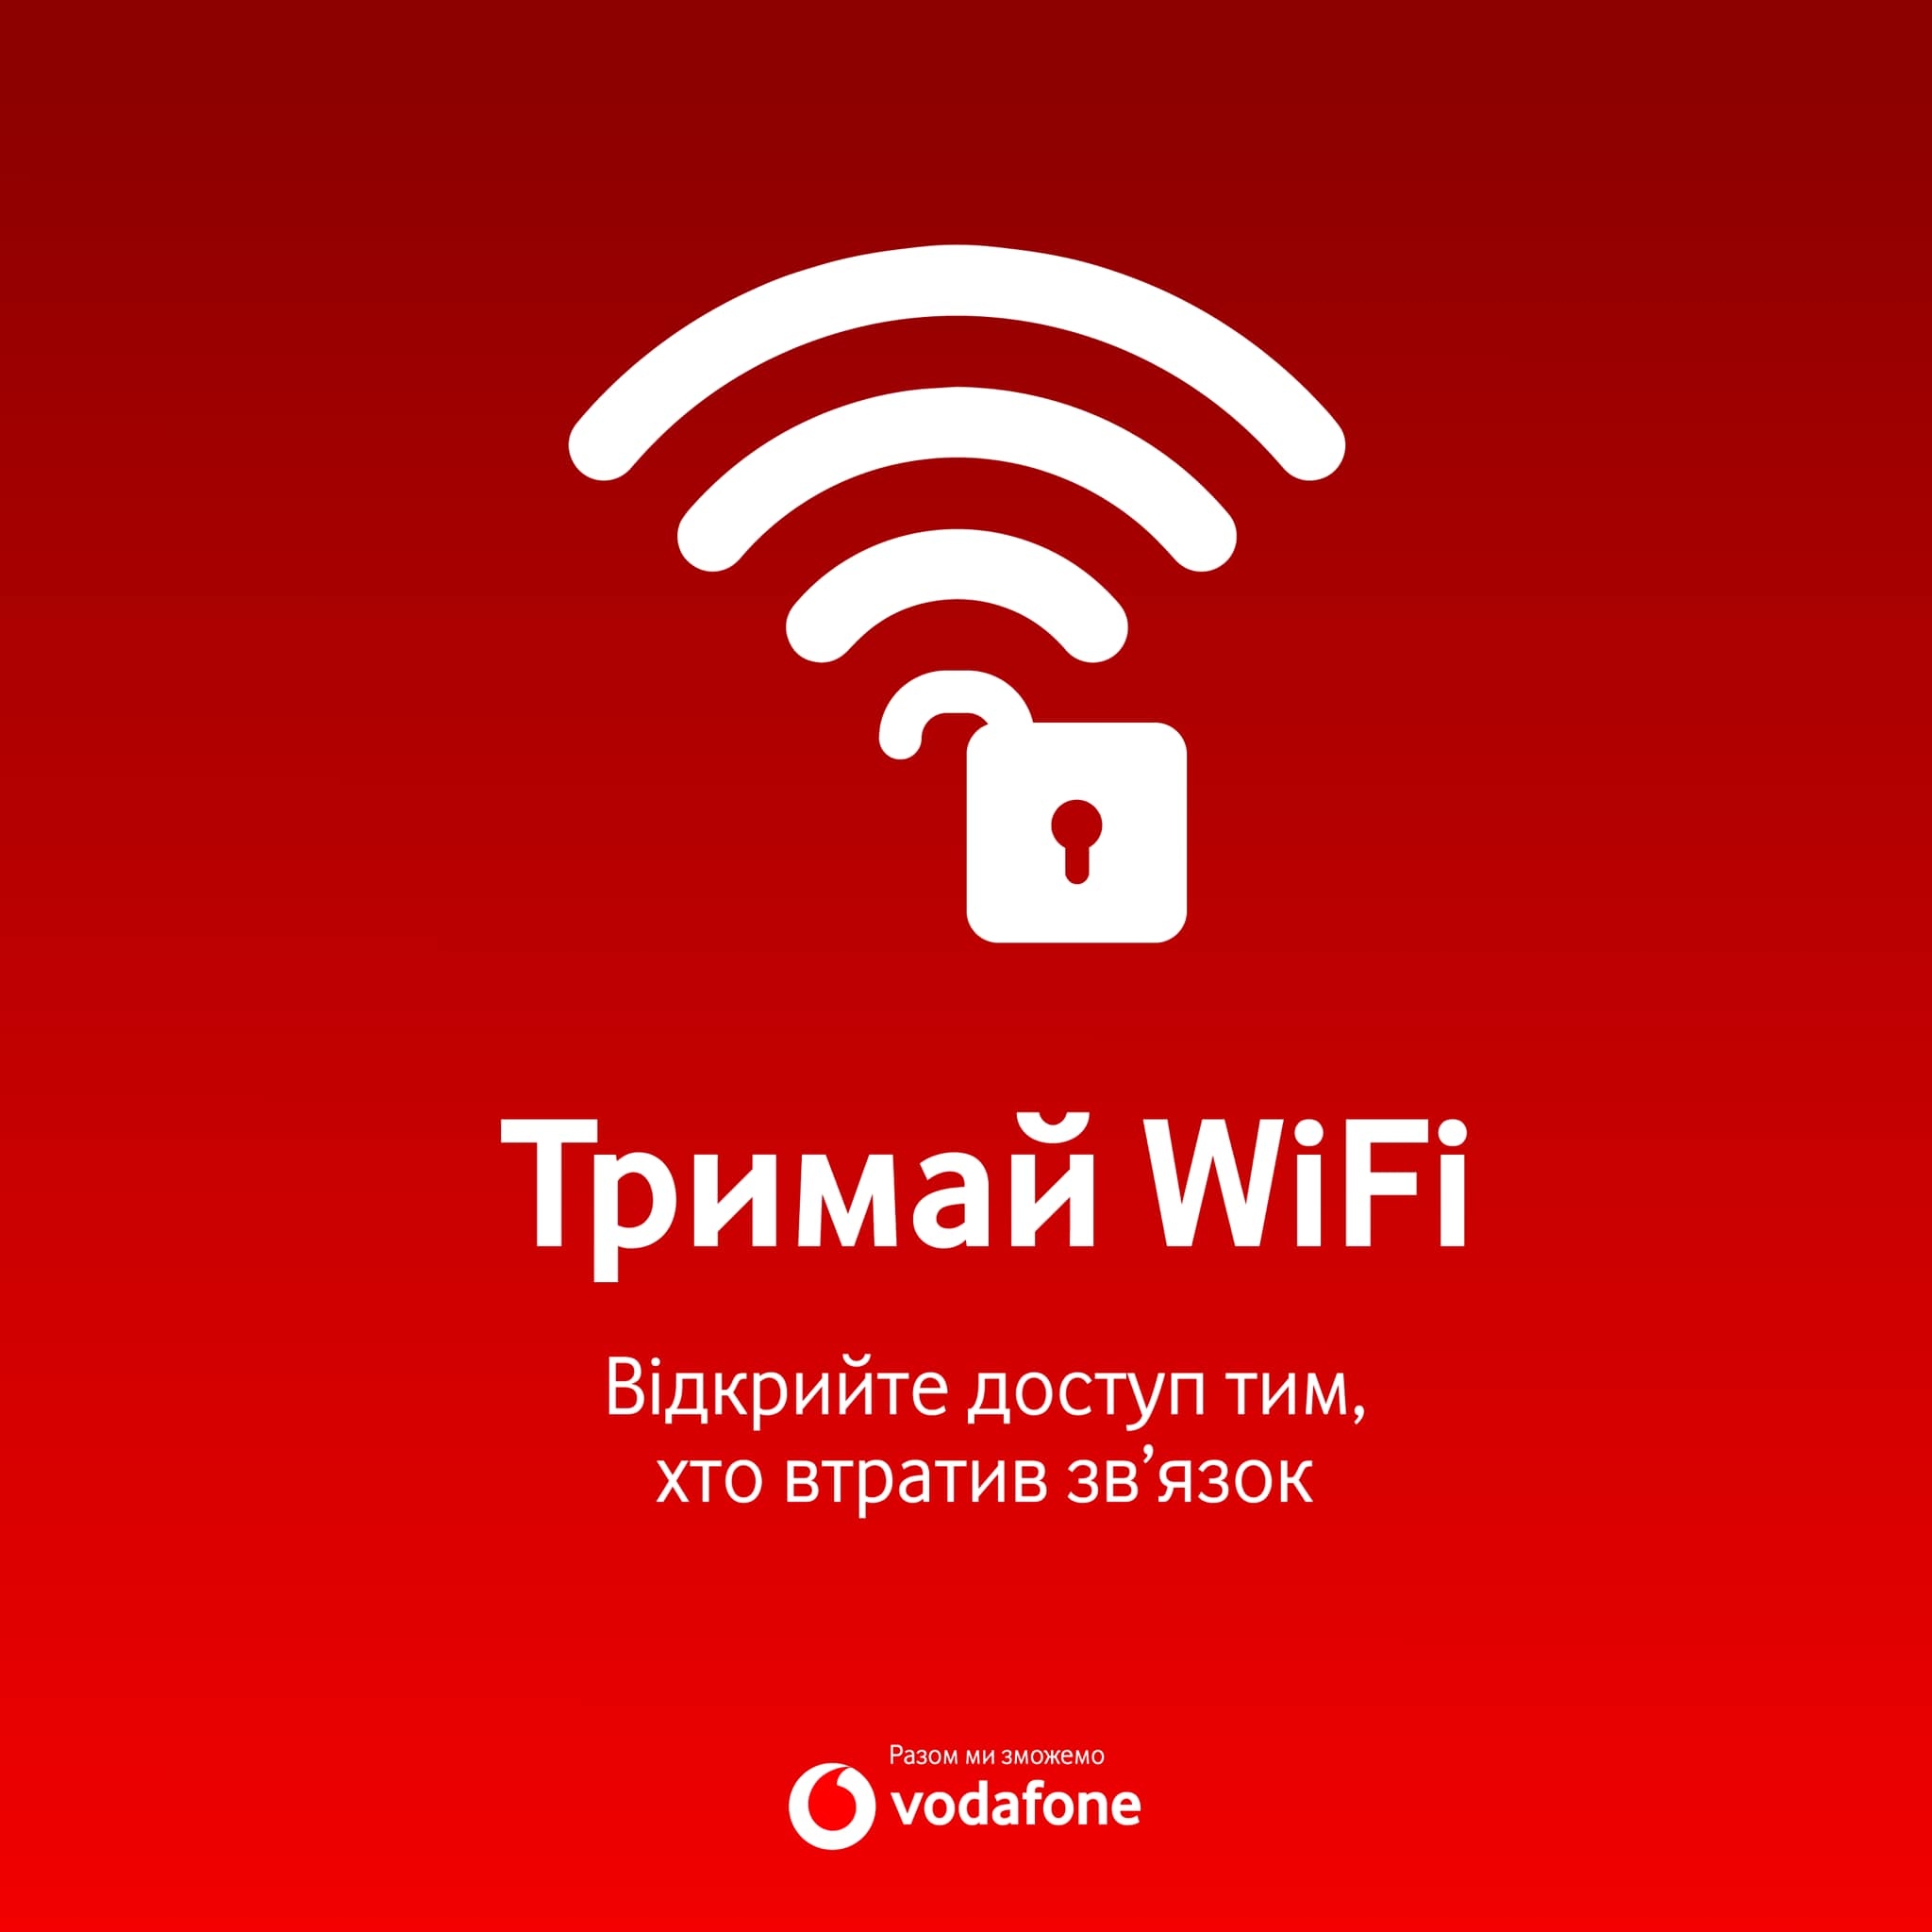 Vodafone Ukraine відкрила свій WiFi для всіх охочих